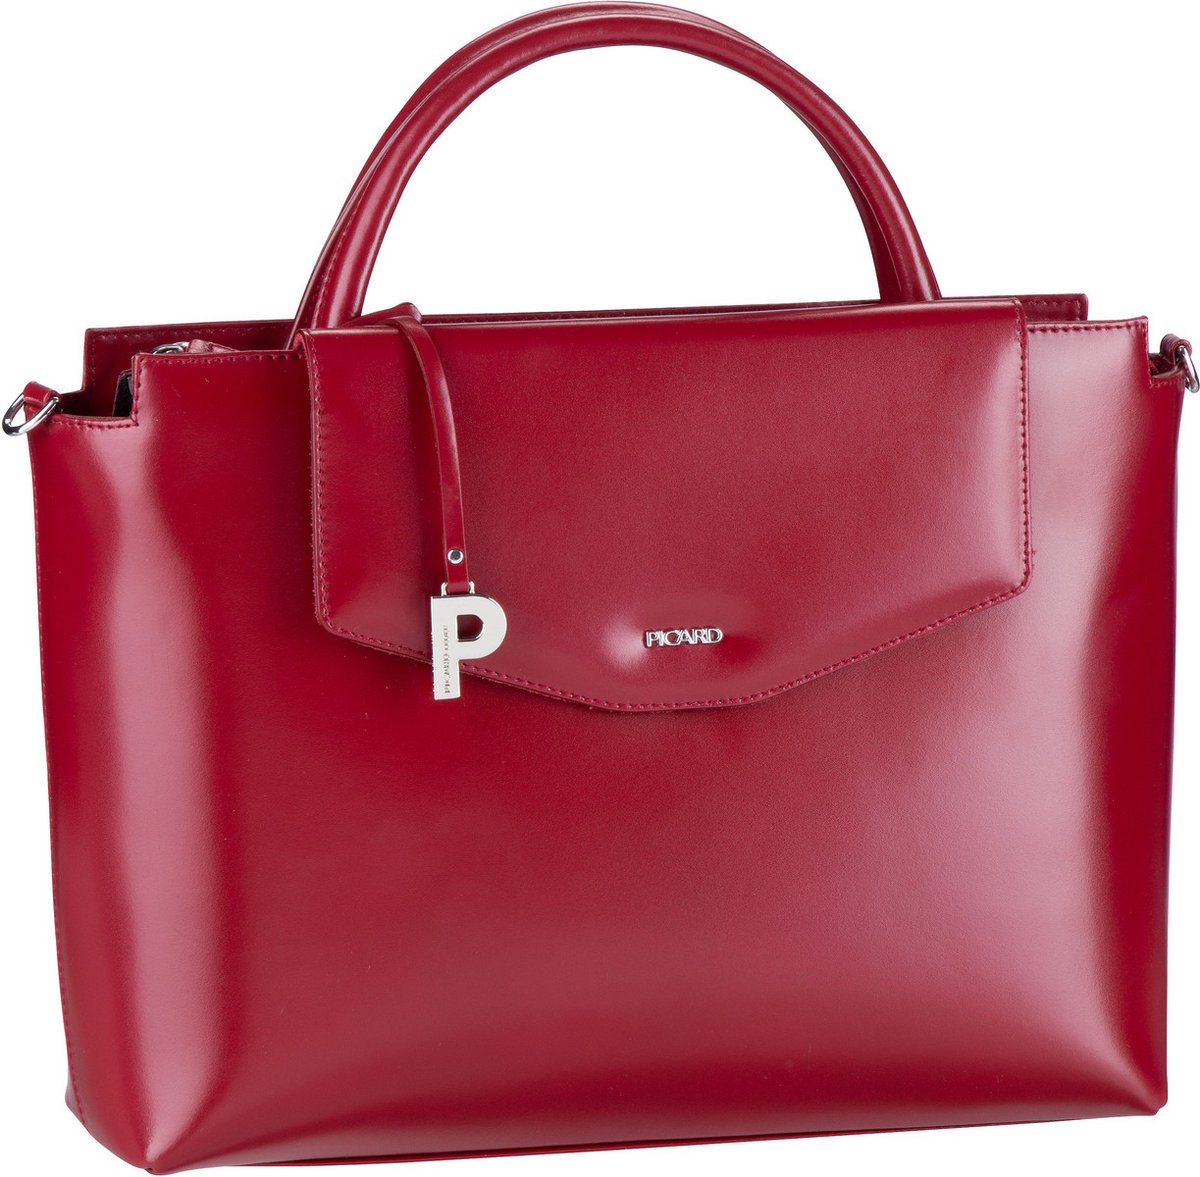 Picard Handtaschen in Rot Damen Taschen Schultertaschen 